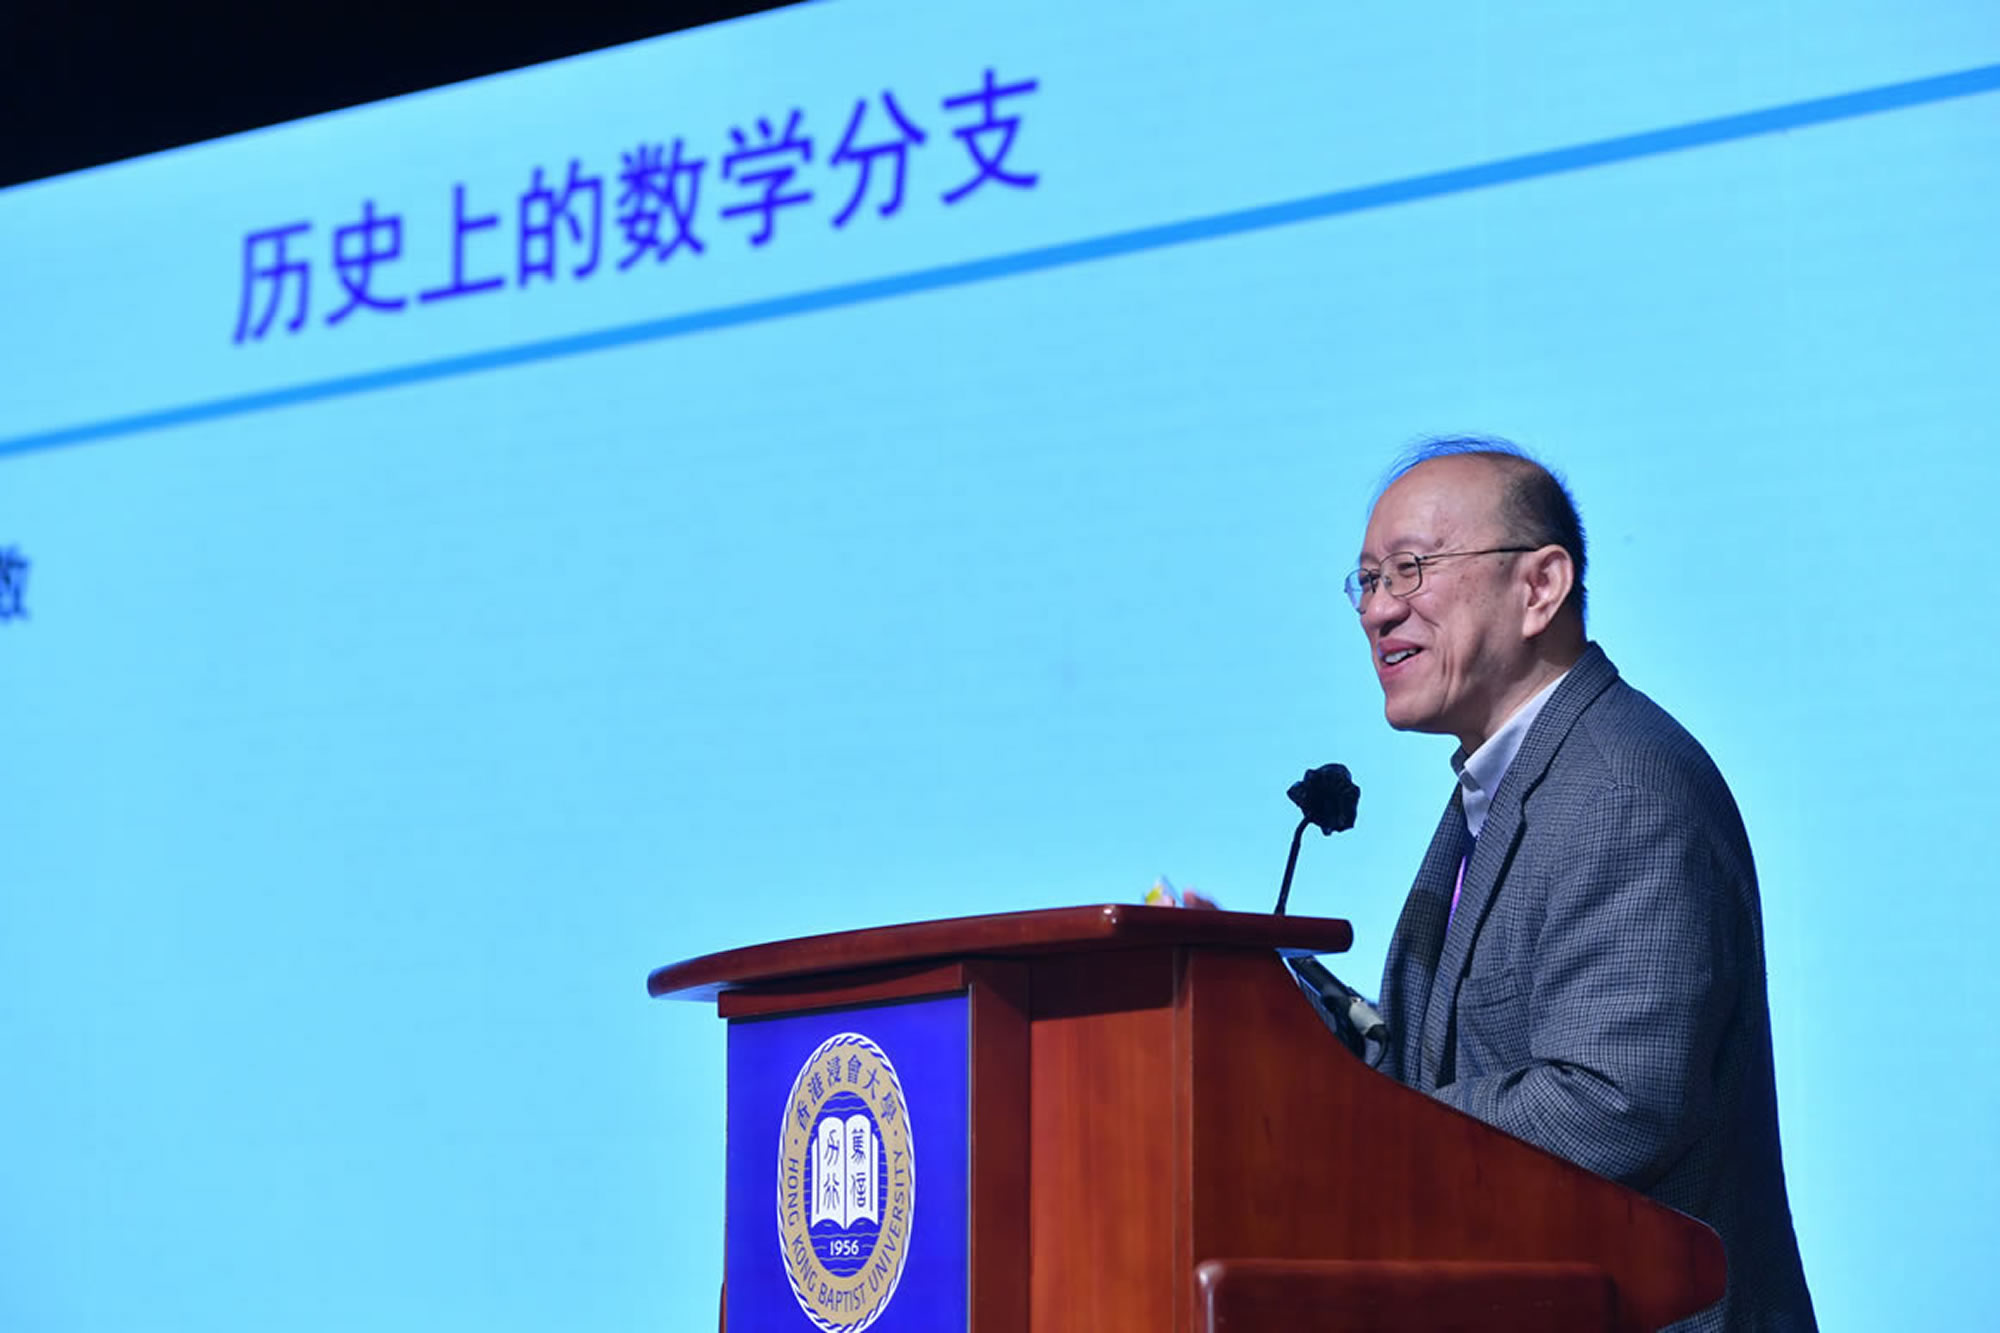 中国科学院院士、西安交通大学电子与信息工程学院院长管晓宏教授发表主题演讲